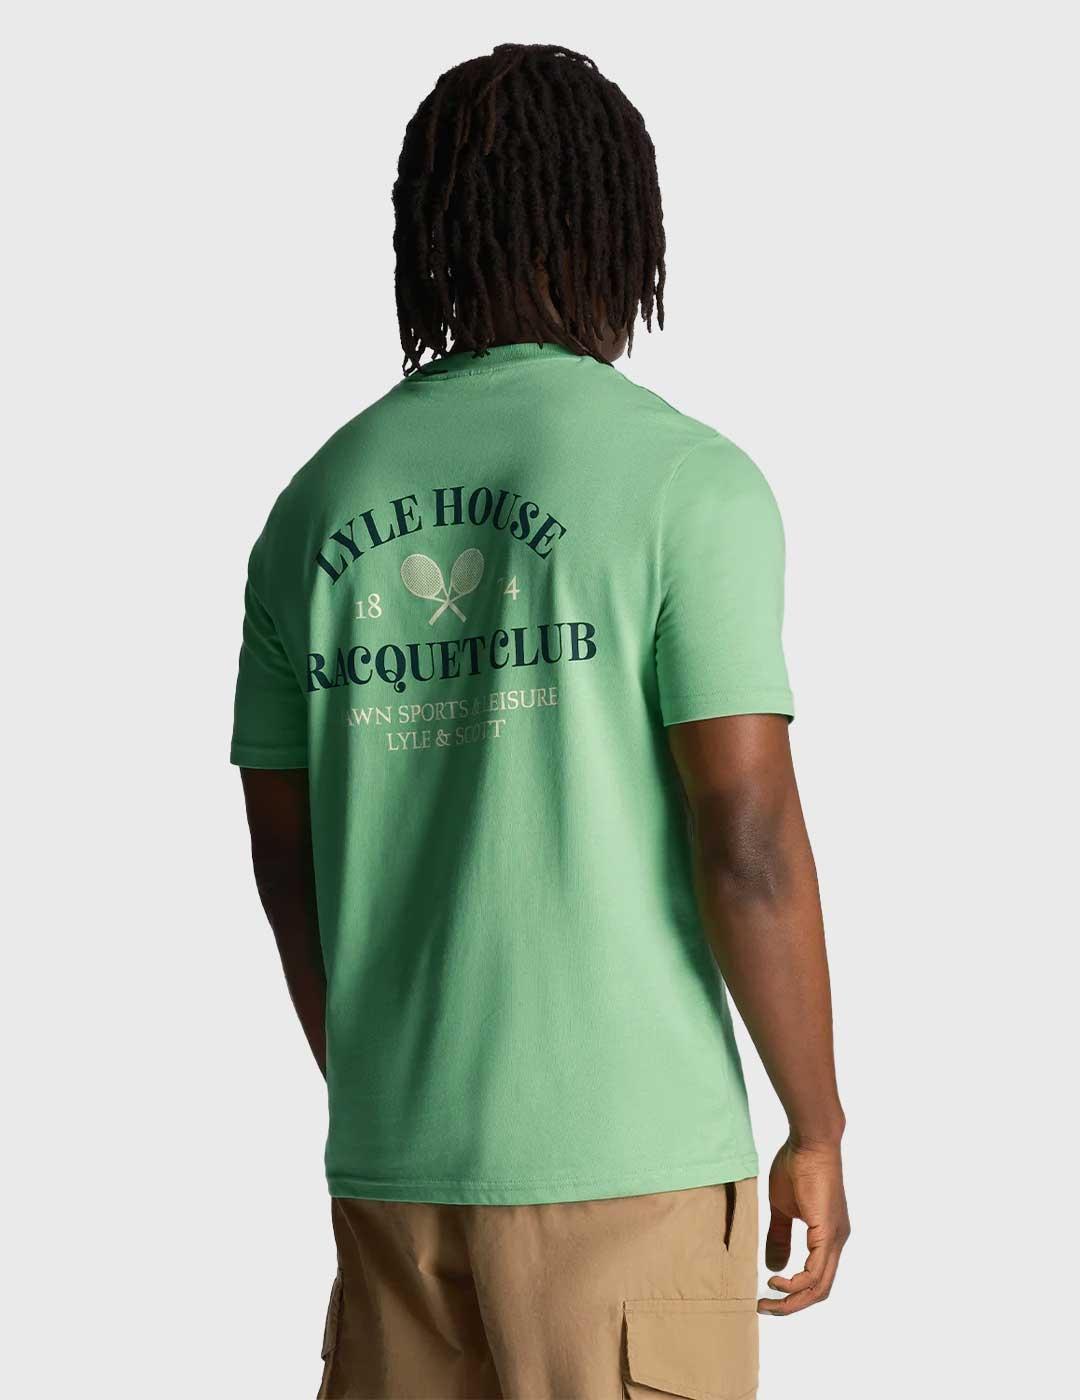 Lyle & Scott RacquetClub Graphic Camiseta verde para hombre